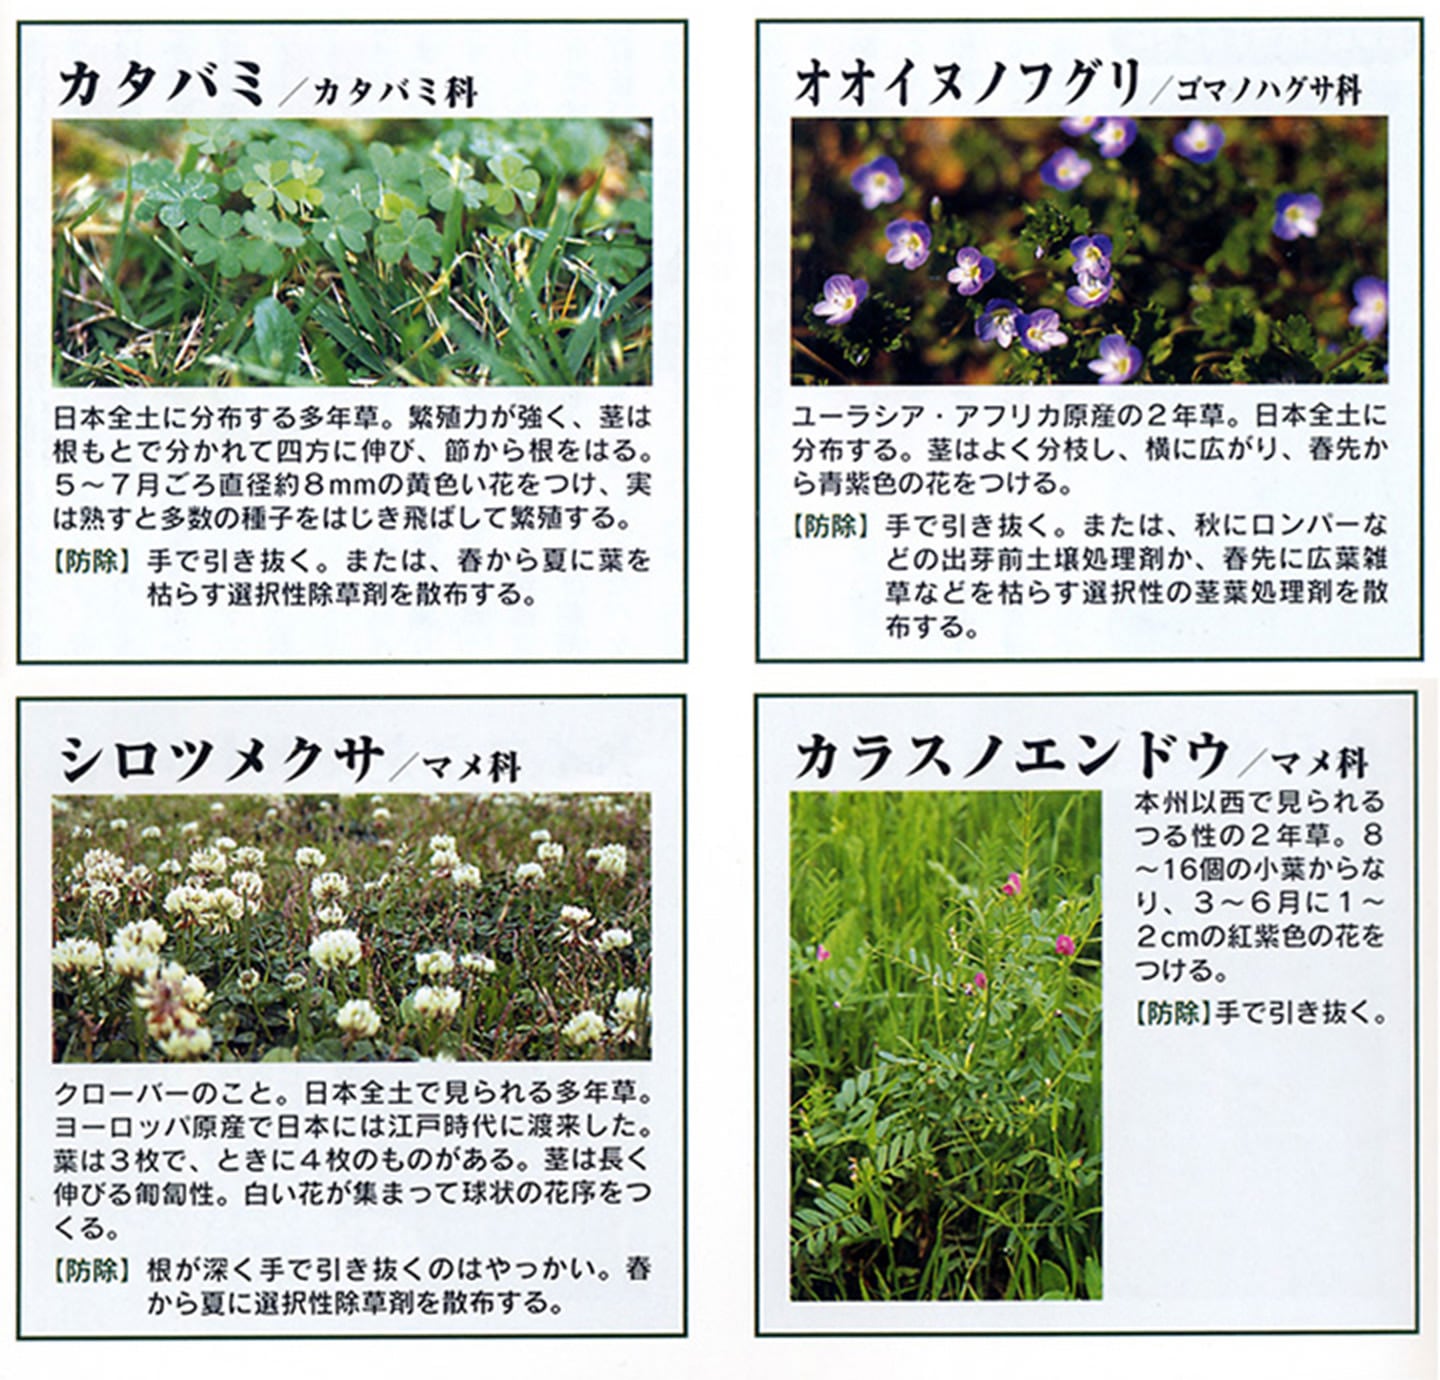 芝生用除草剤 クサブロック 250g【送料無料】 | 薬剤,除草剤 | HAYASHI